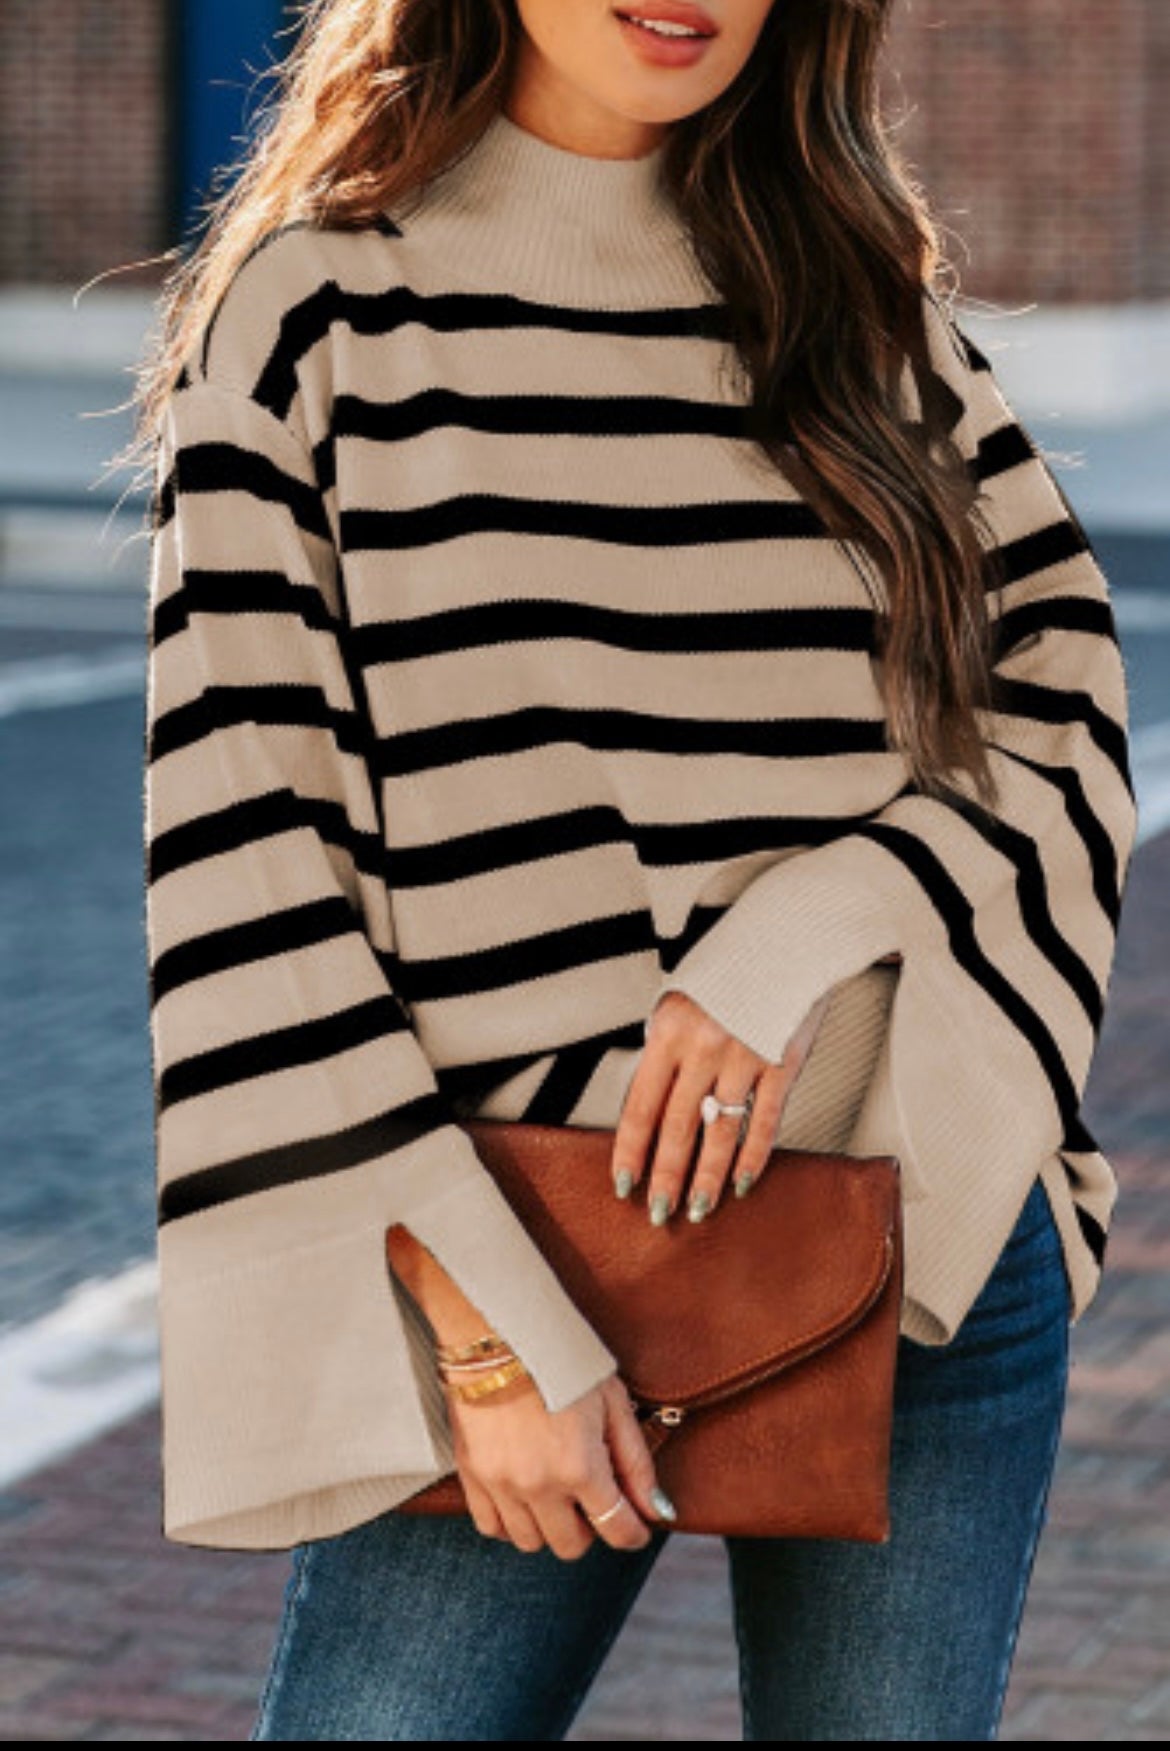 Striped sweater tan